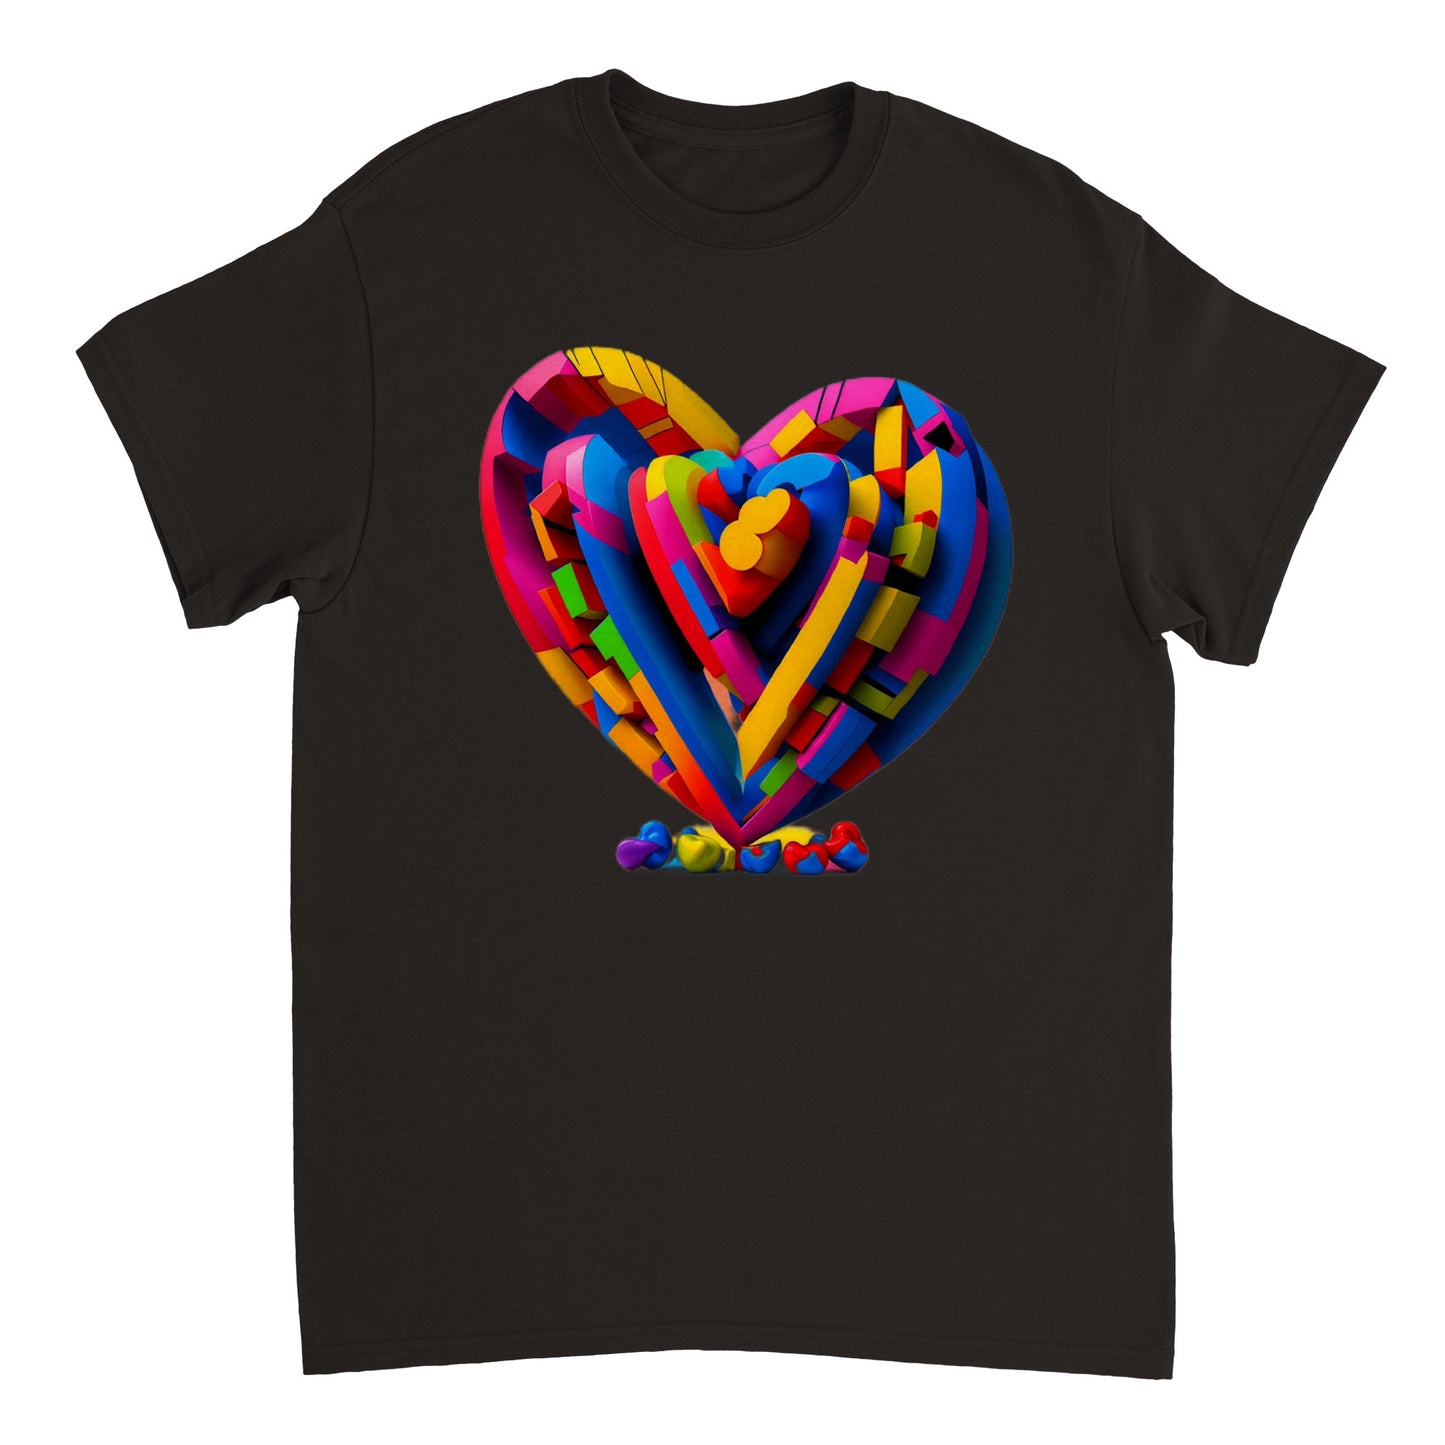 Love Heart - Heavyweight Unisex Crewneck T-shirt 21